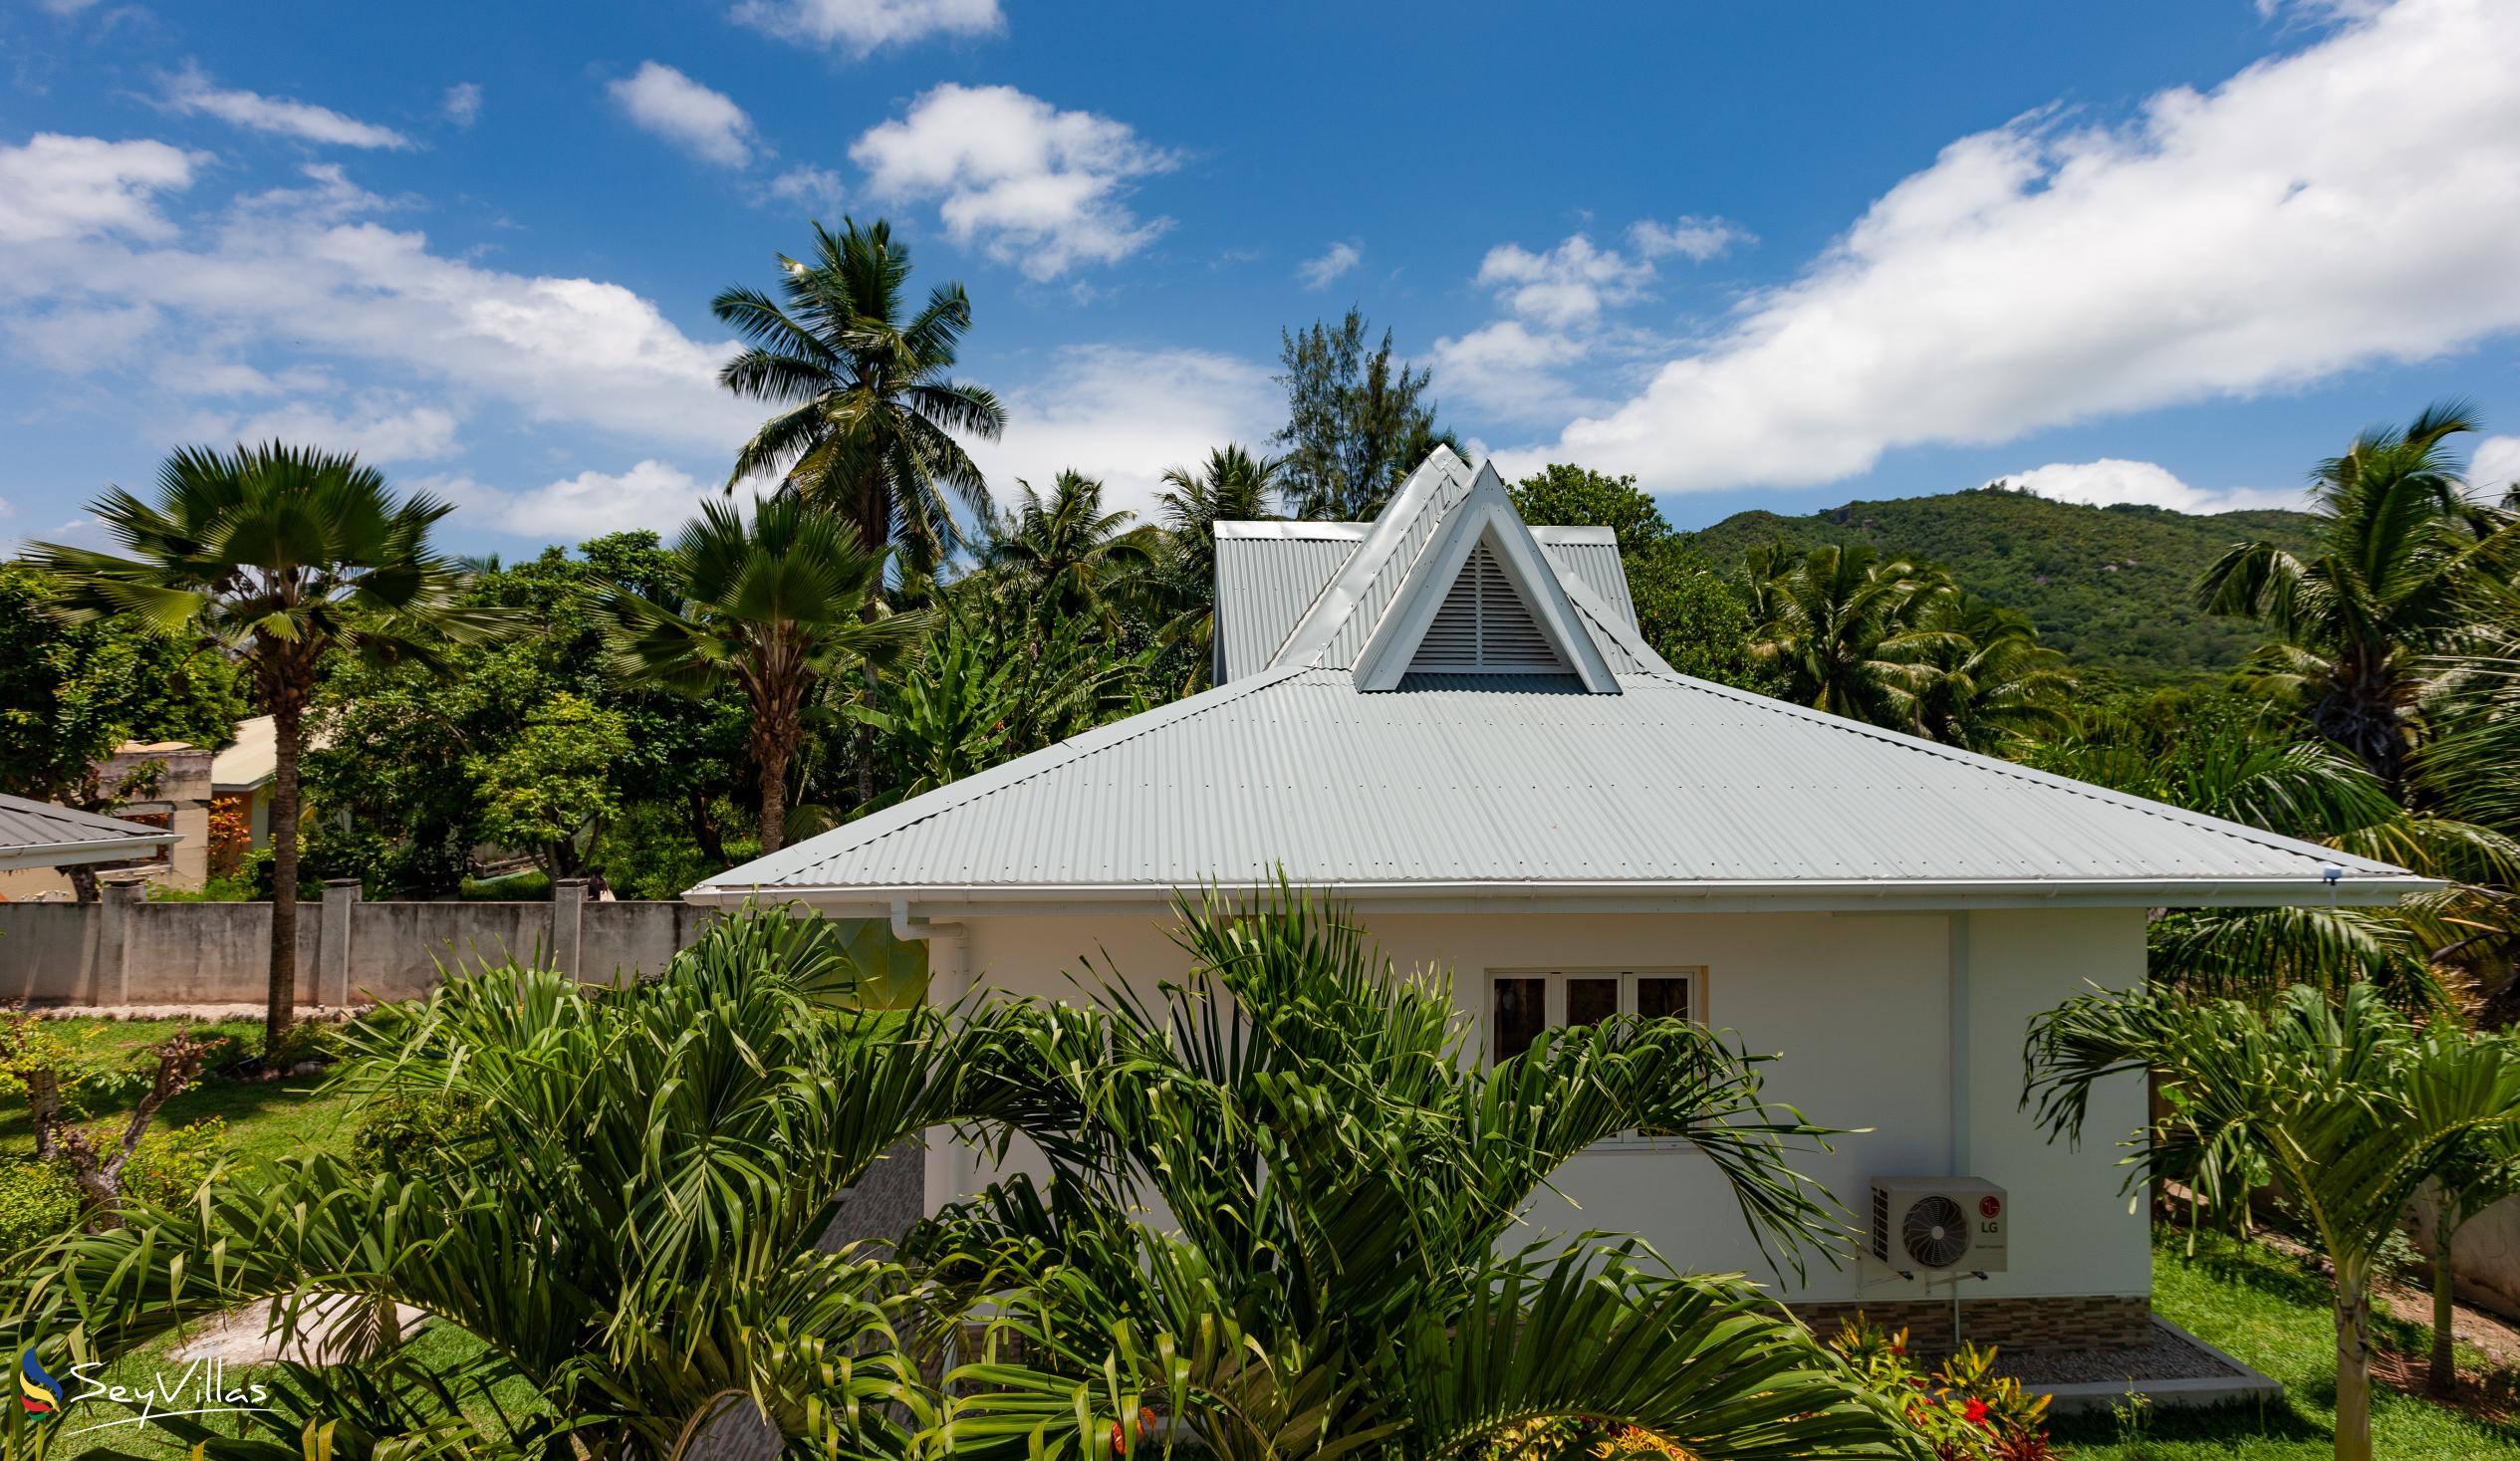 Foto 9: Villa Aya - Extérieur - Praslin (Seychelles)